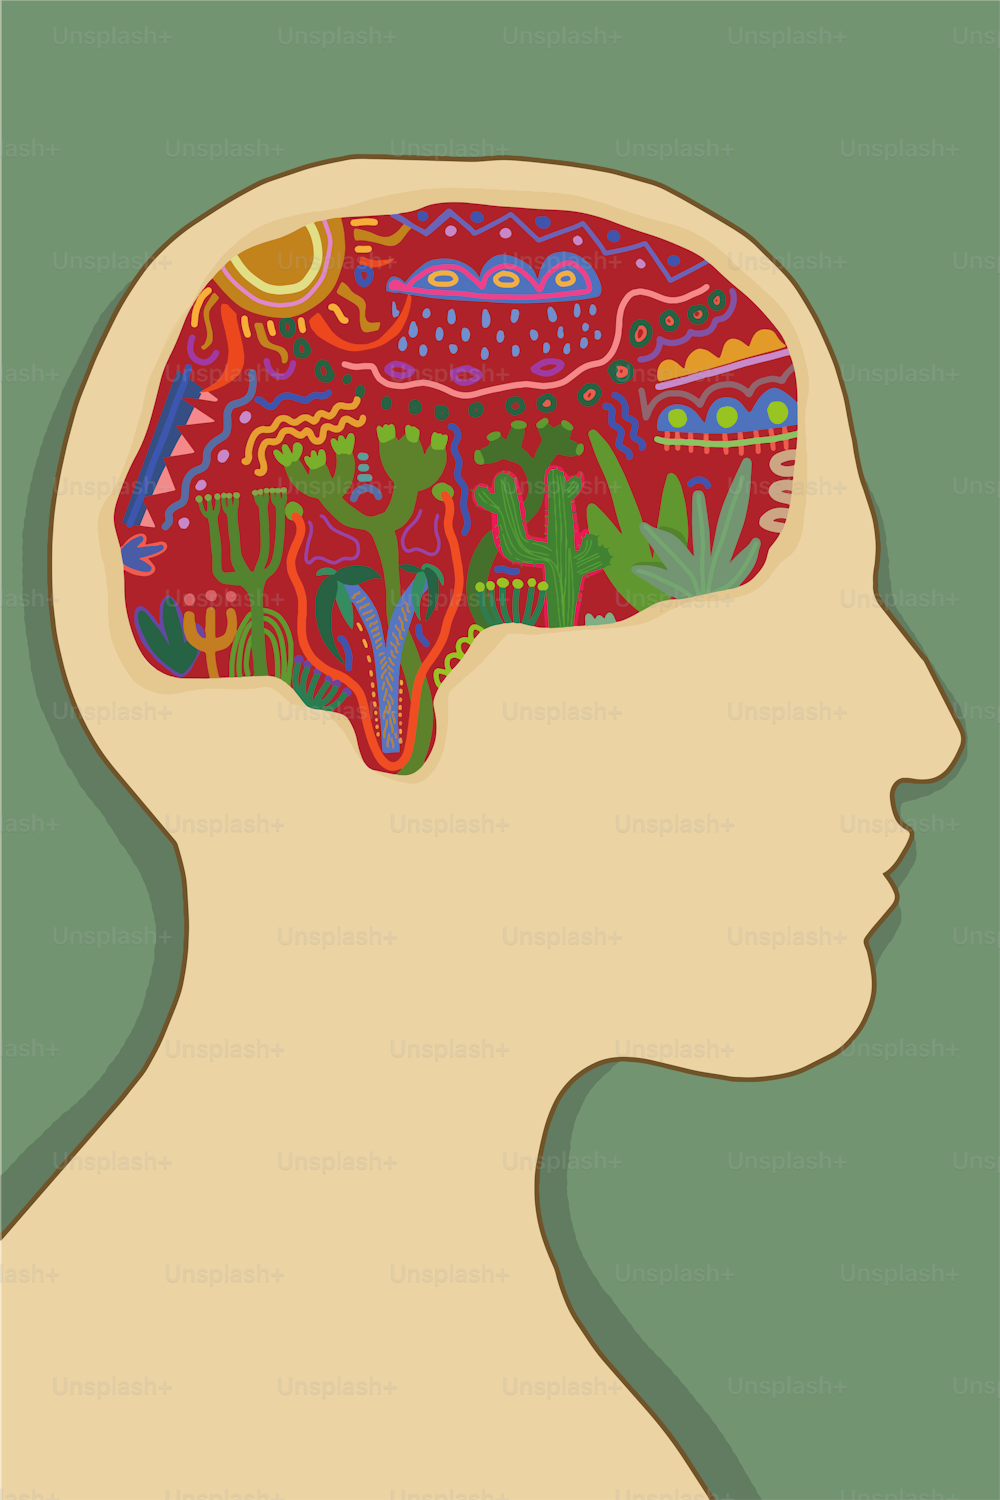 Illustrazione di una testa con una mente colorata su sfondo verde che rappresenta le idee e il pensiero di una persona alle prese con problemi mentali